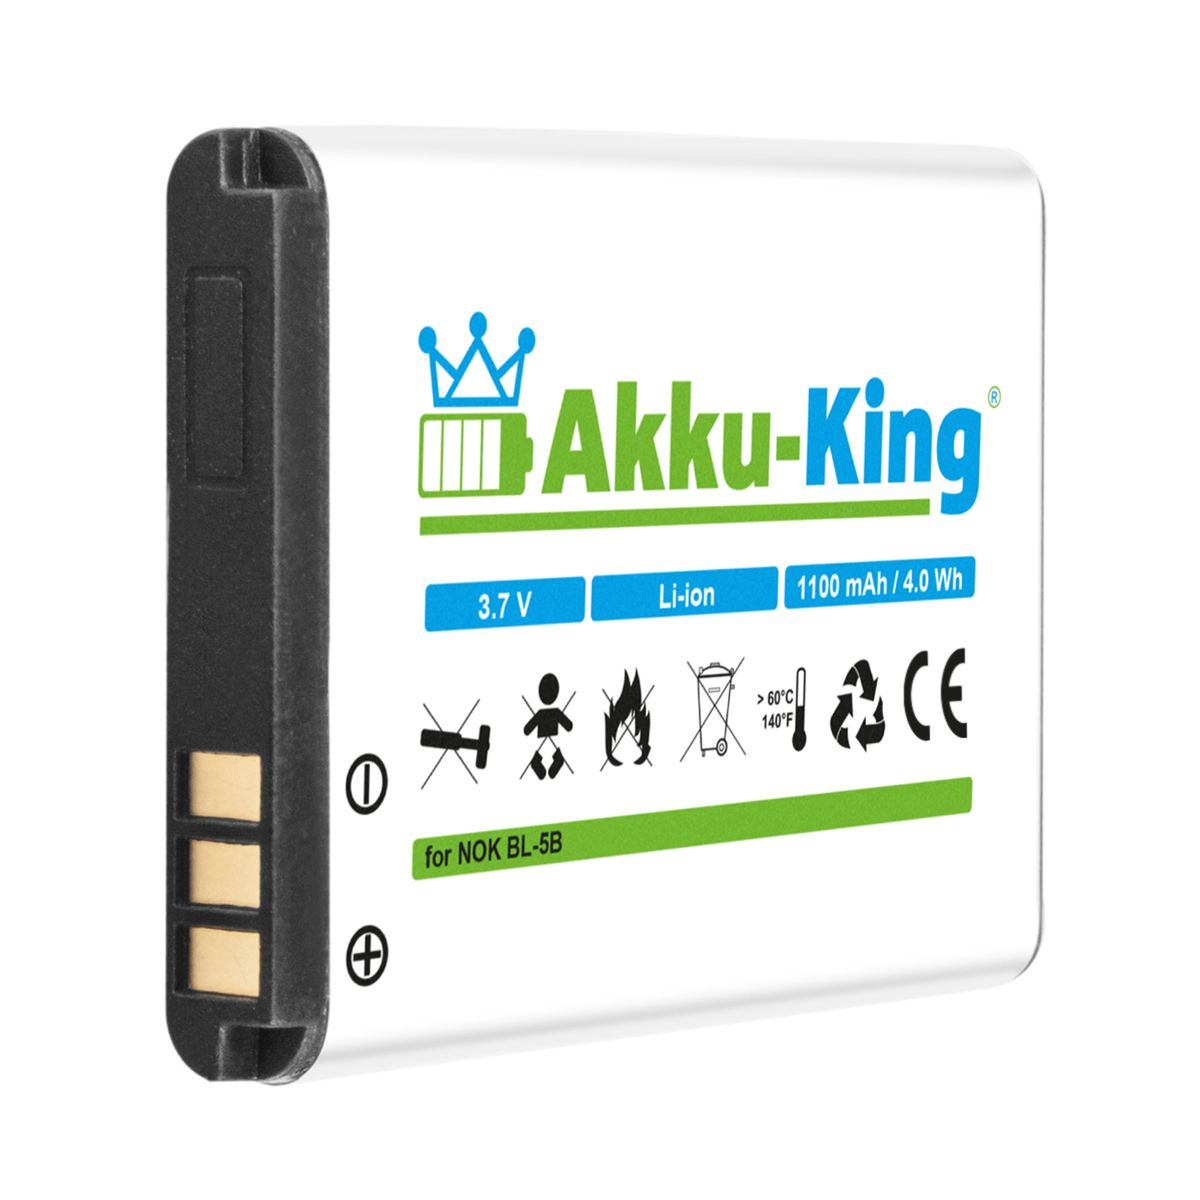 mit Akku 1100mAh Handy-Akku, Li-Ion Nokia Volt, kompatibel BL-5B 3.7 AKKU-KING